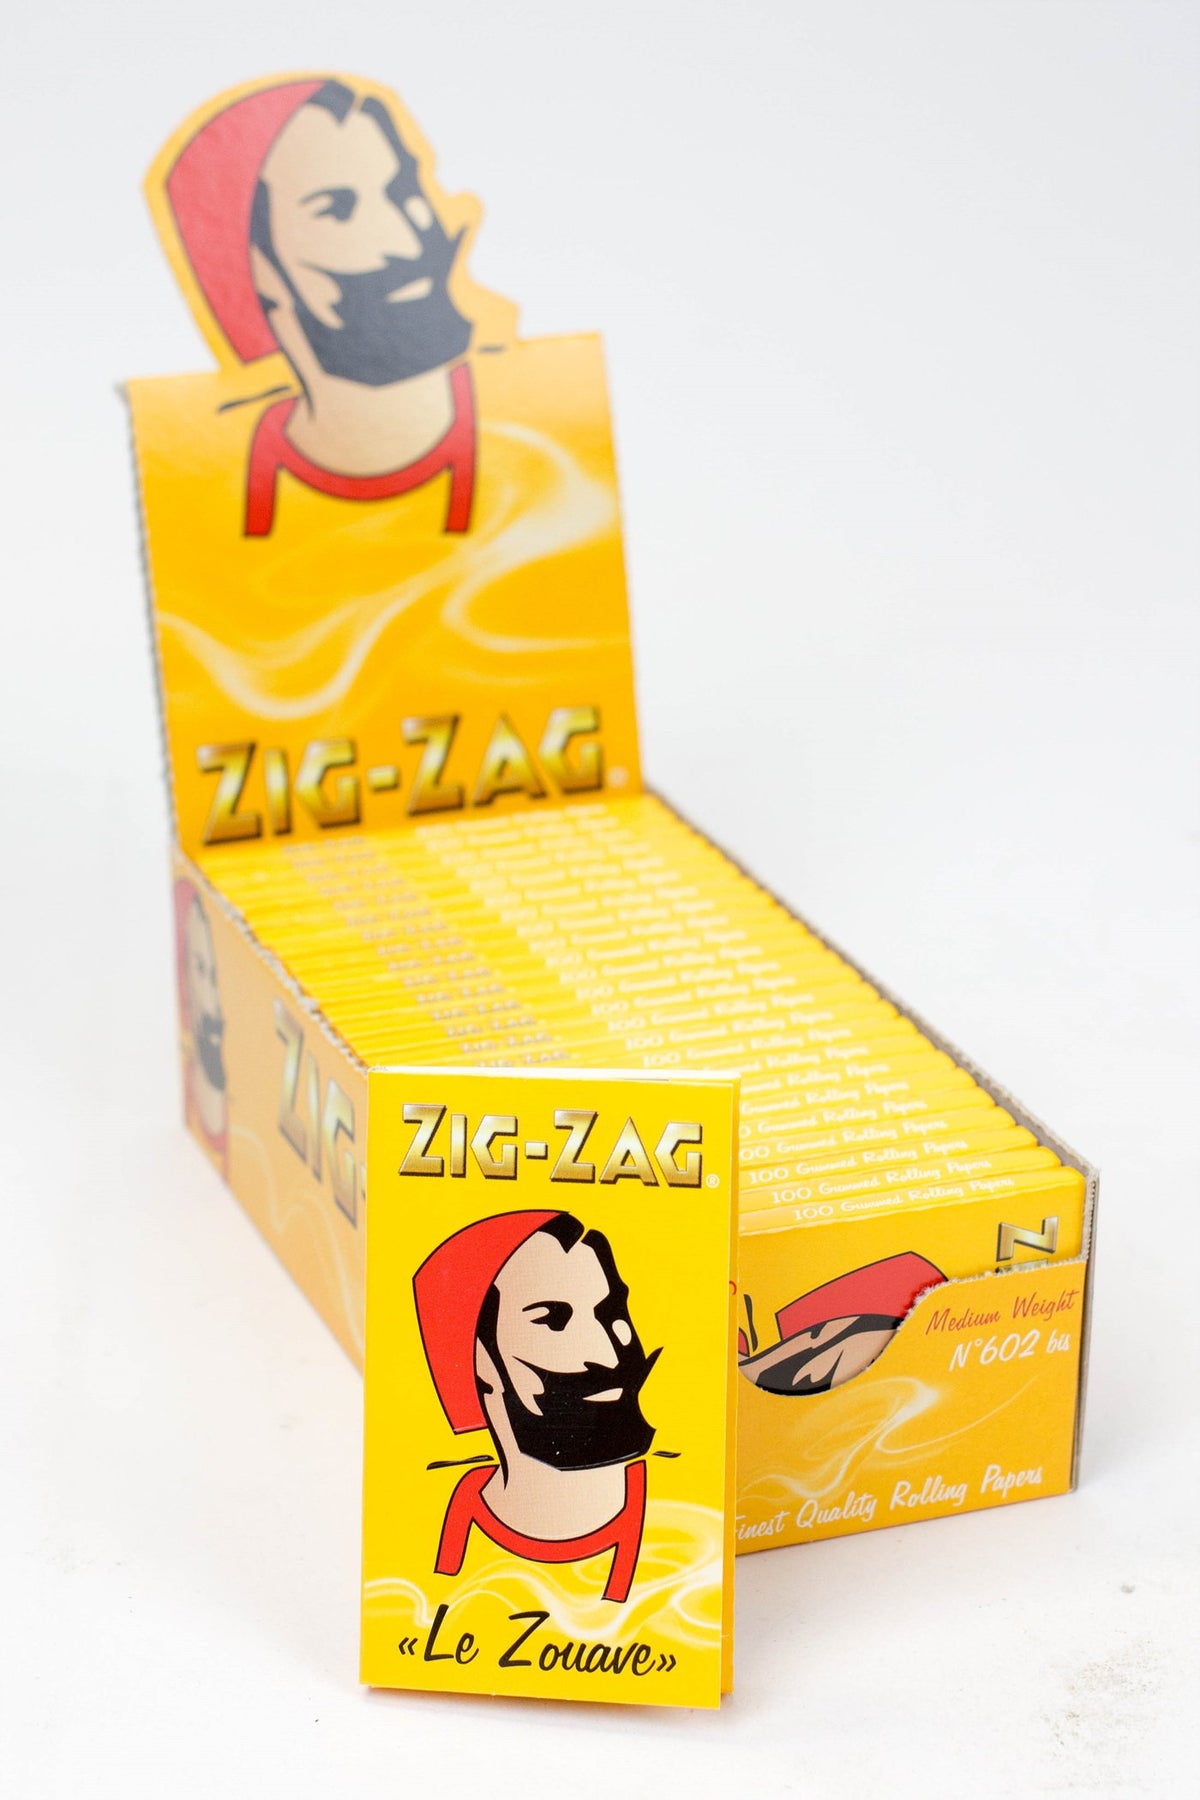 Zig Zag Original Rolling Paper Tips